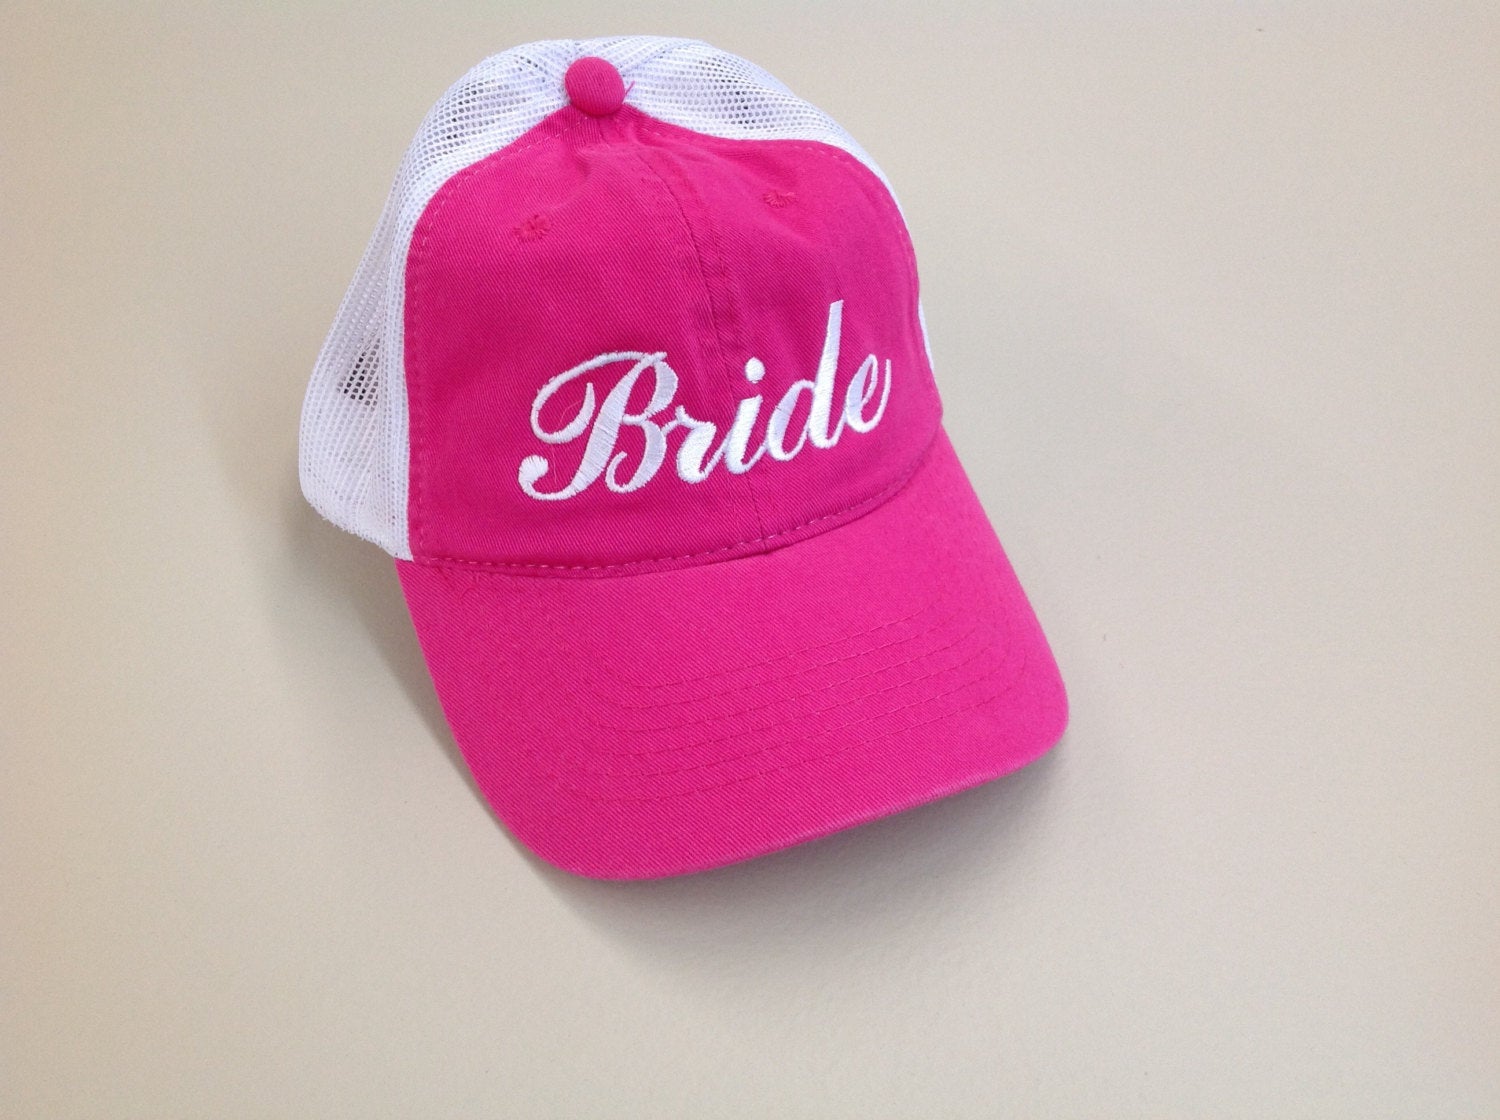 Bride Hat Bachelorette Party Bride Trucker Mesh Unstructured Hat